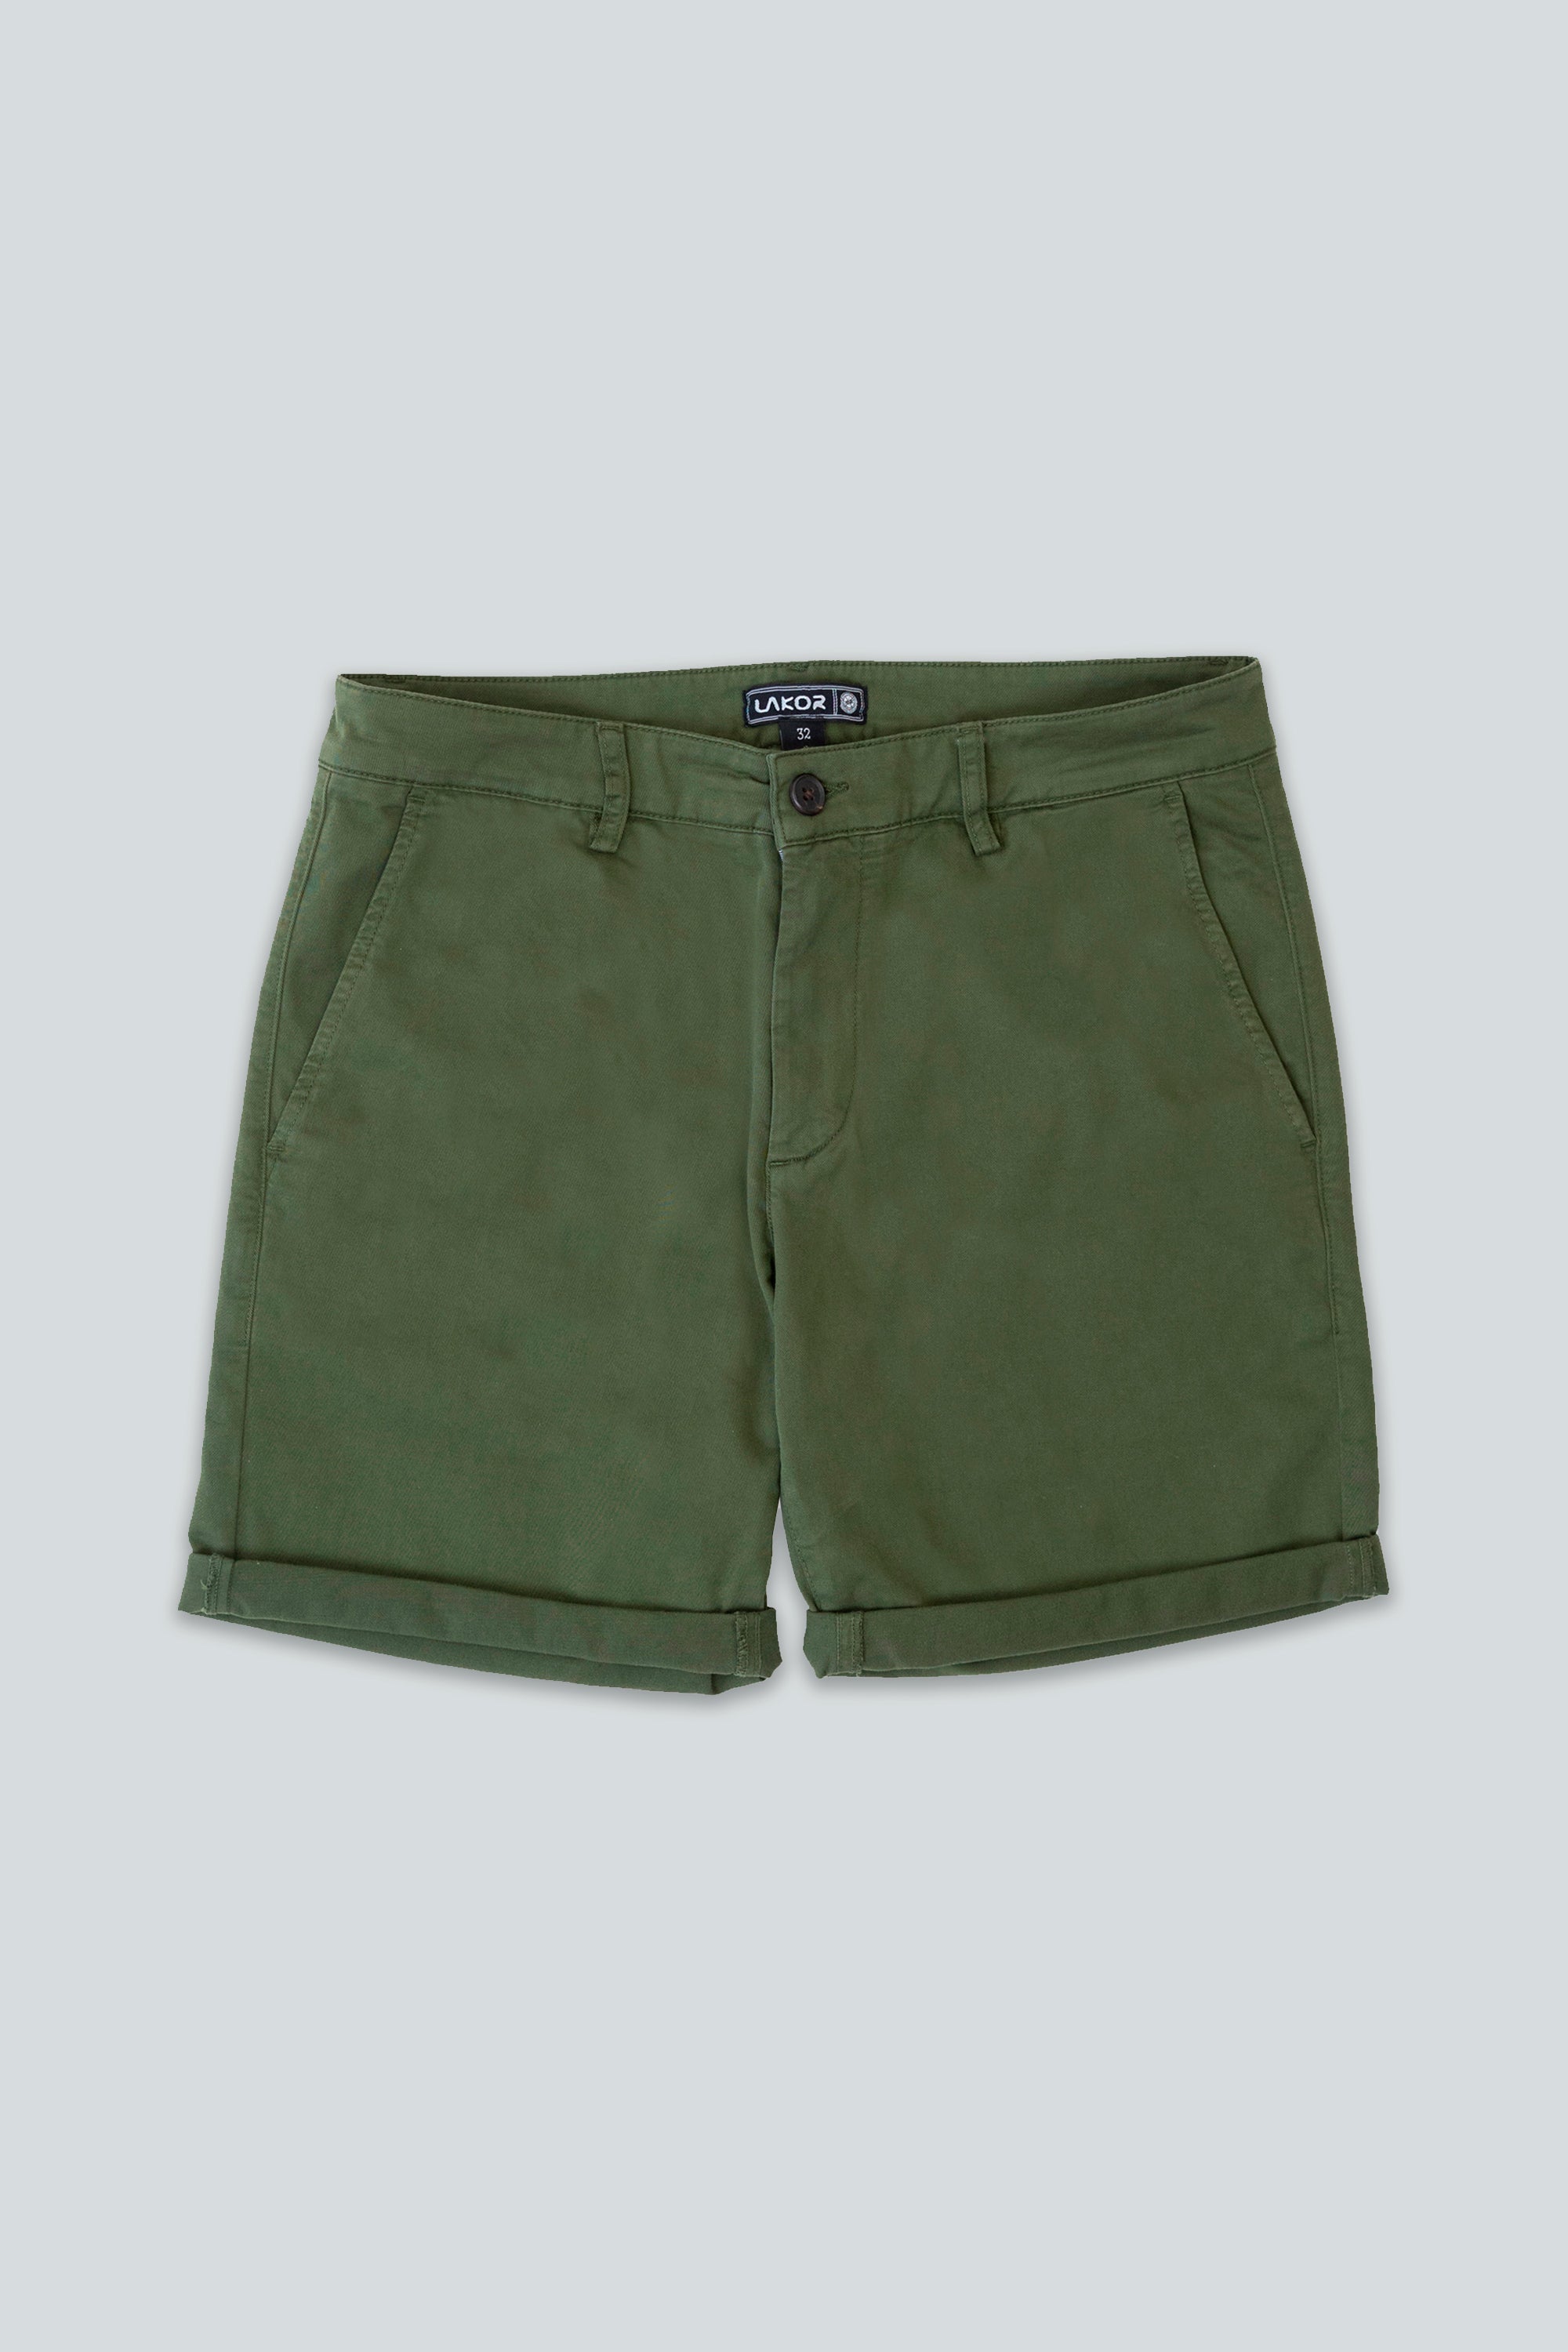 Chino Shorts (Cypress)